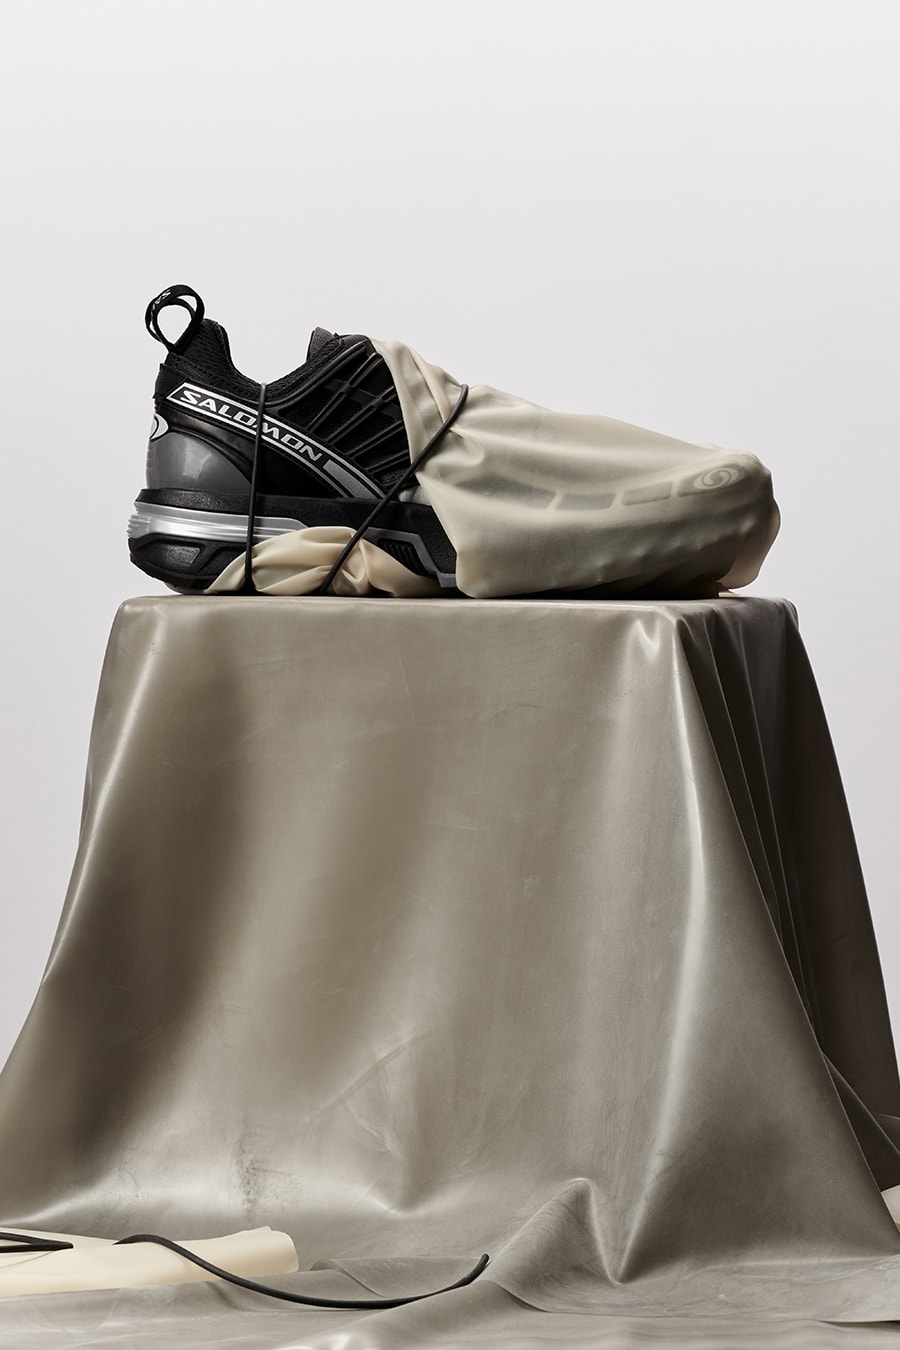 サロモンのACS プロ アドバンスドがドーバー ストリート マーケット エクスクルーシブとして登場 Dover Street Market Salomon ACS Pro Advanced Black Quiet Shade Metallic Silver Vanilla Ice Collaboration Sneakers Release Information